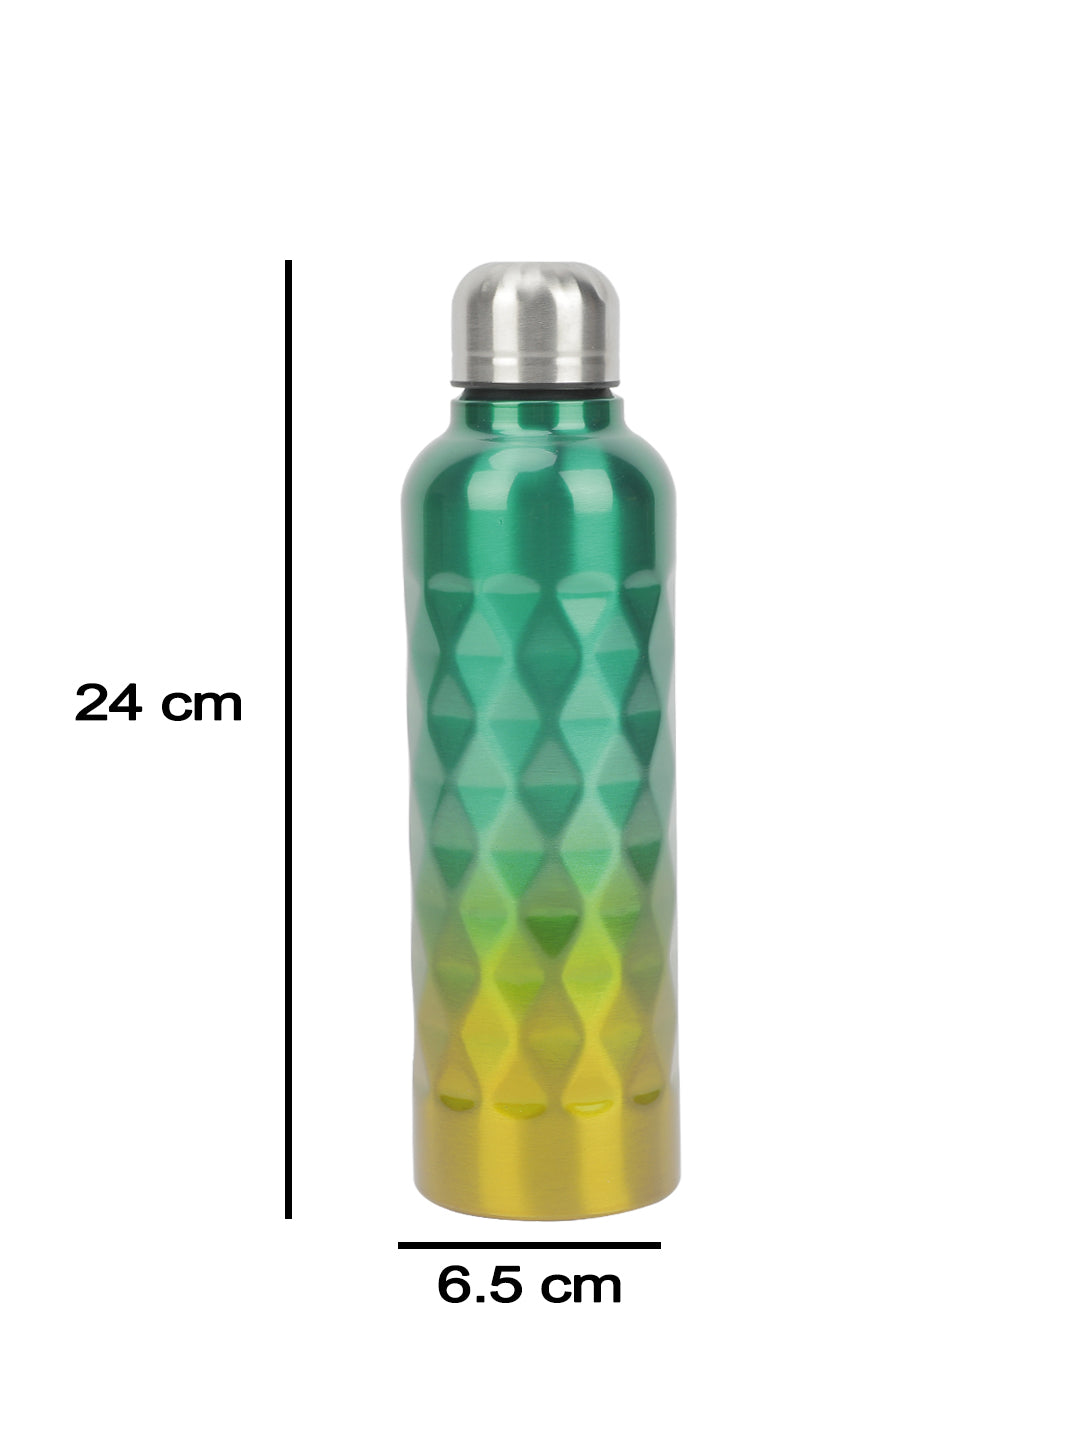 VON CASA 750Ml Gradient Color Stainless Steel Water Bottles - Green